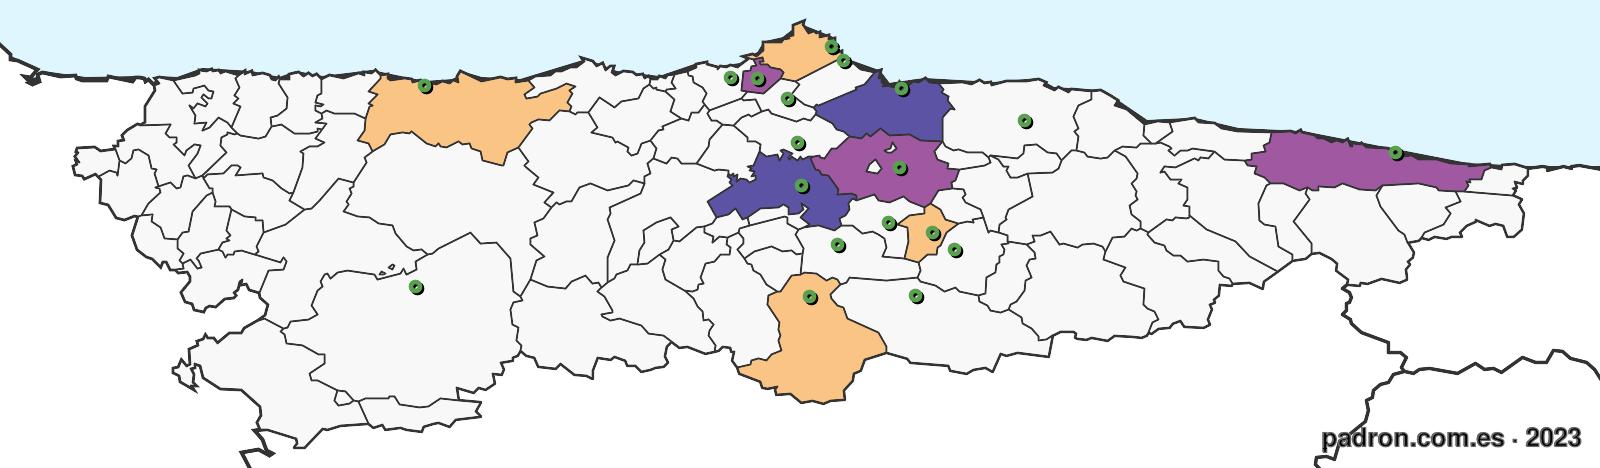 panameños en asturias.